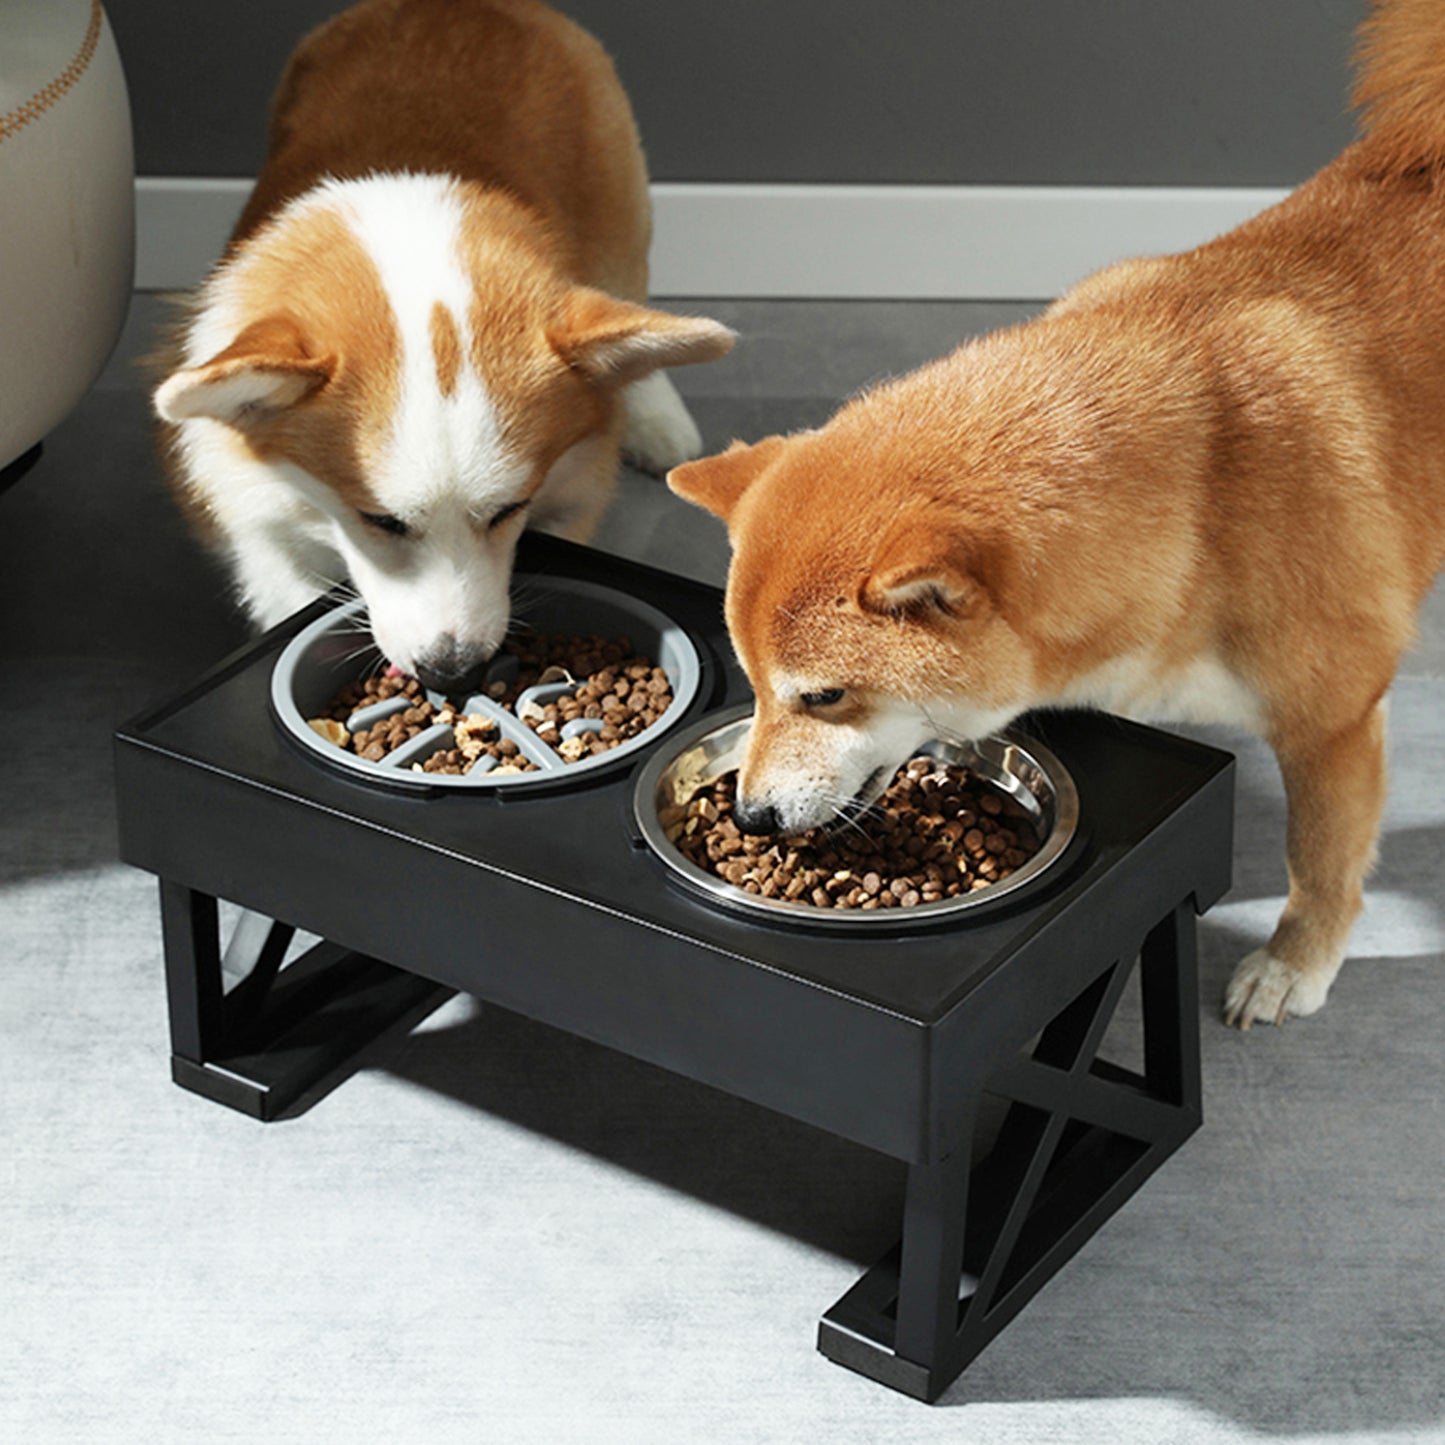 Dog Bowl For Large Dogs, Adjustable Elevated Dog Bowl, Pet Food